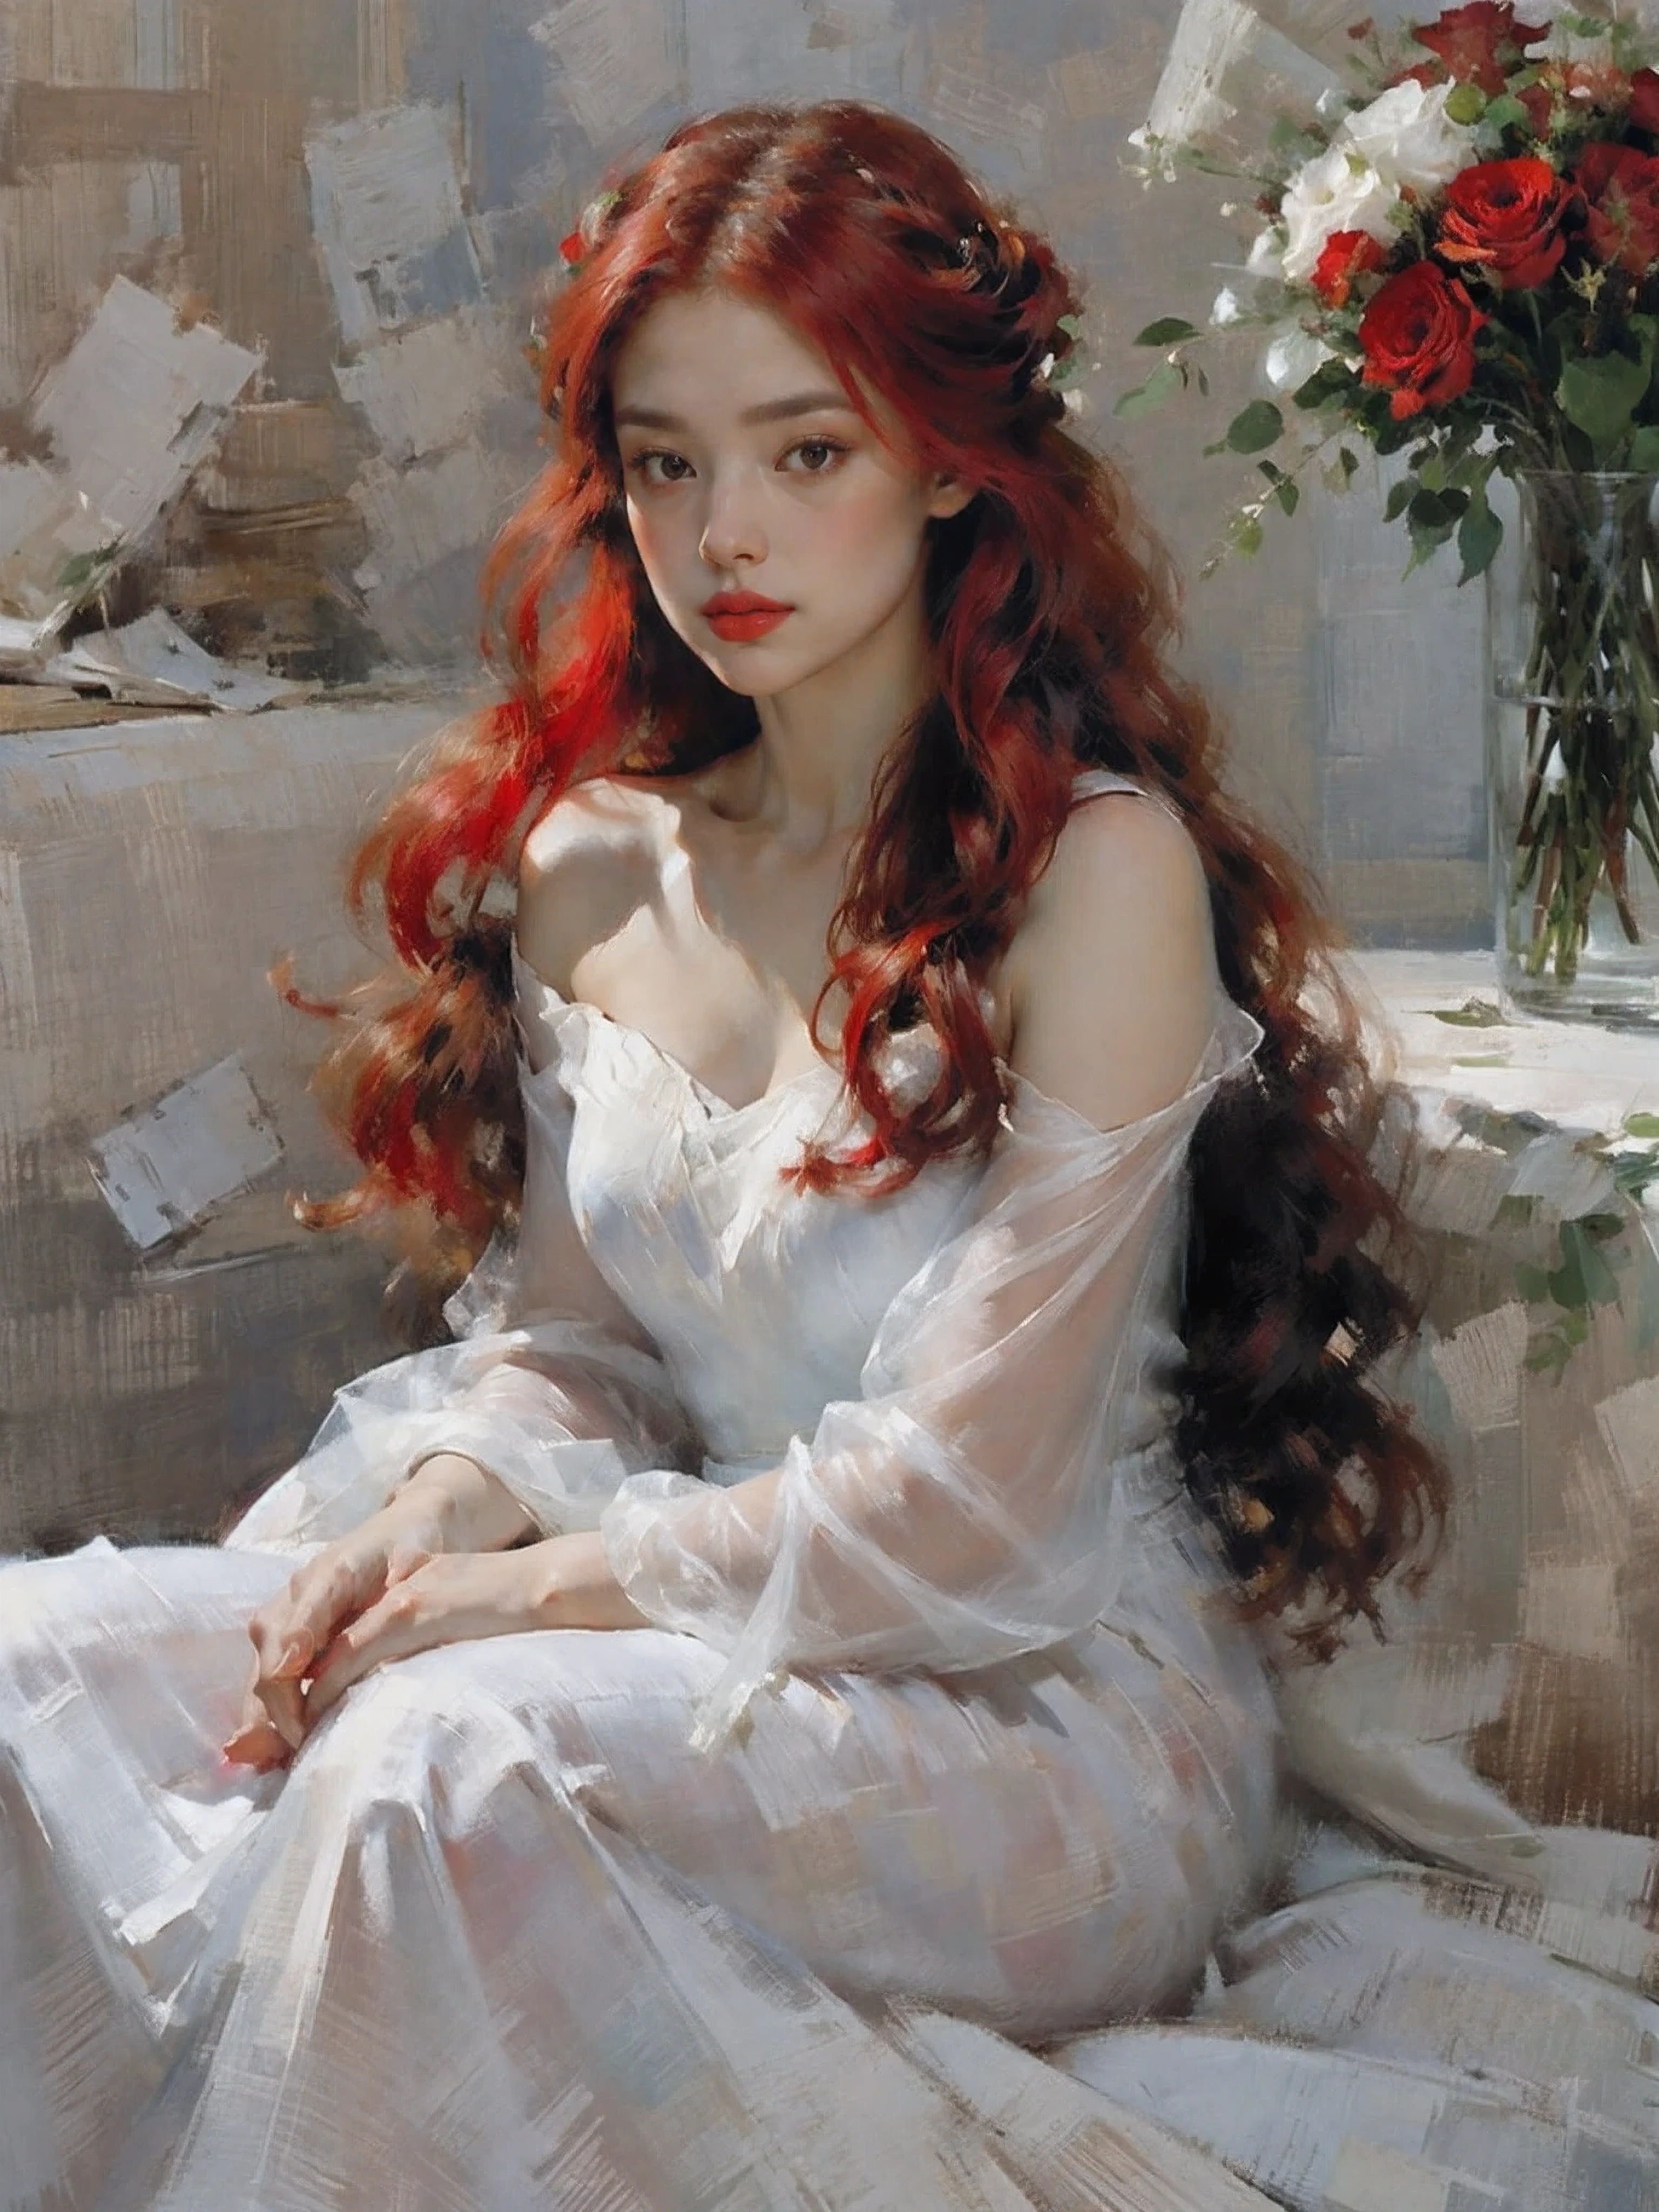 肖像,1 名女孩,獨自的,裙子,拿著鮮花花束,很長的頭髮,紅花,紅髮,红玫瑰,white 裙子